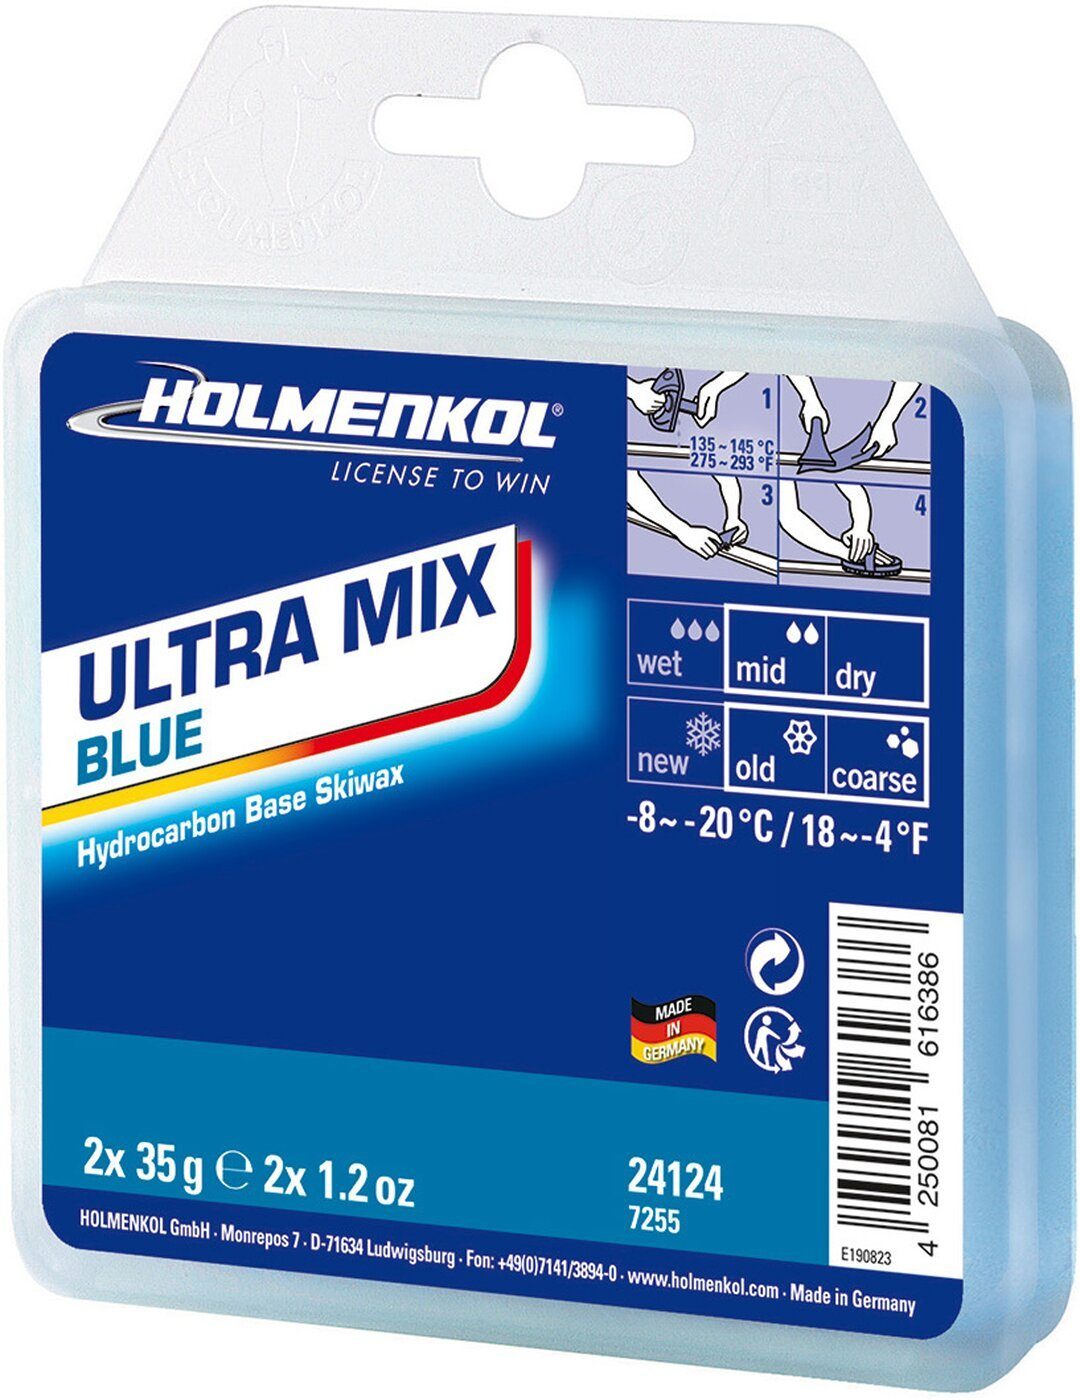 Holmenkol Ski Ultramix Blue 2x35 g